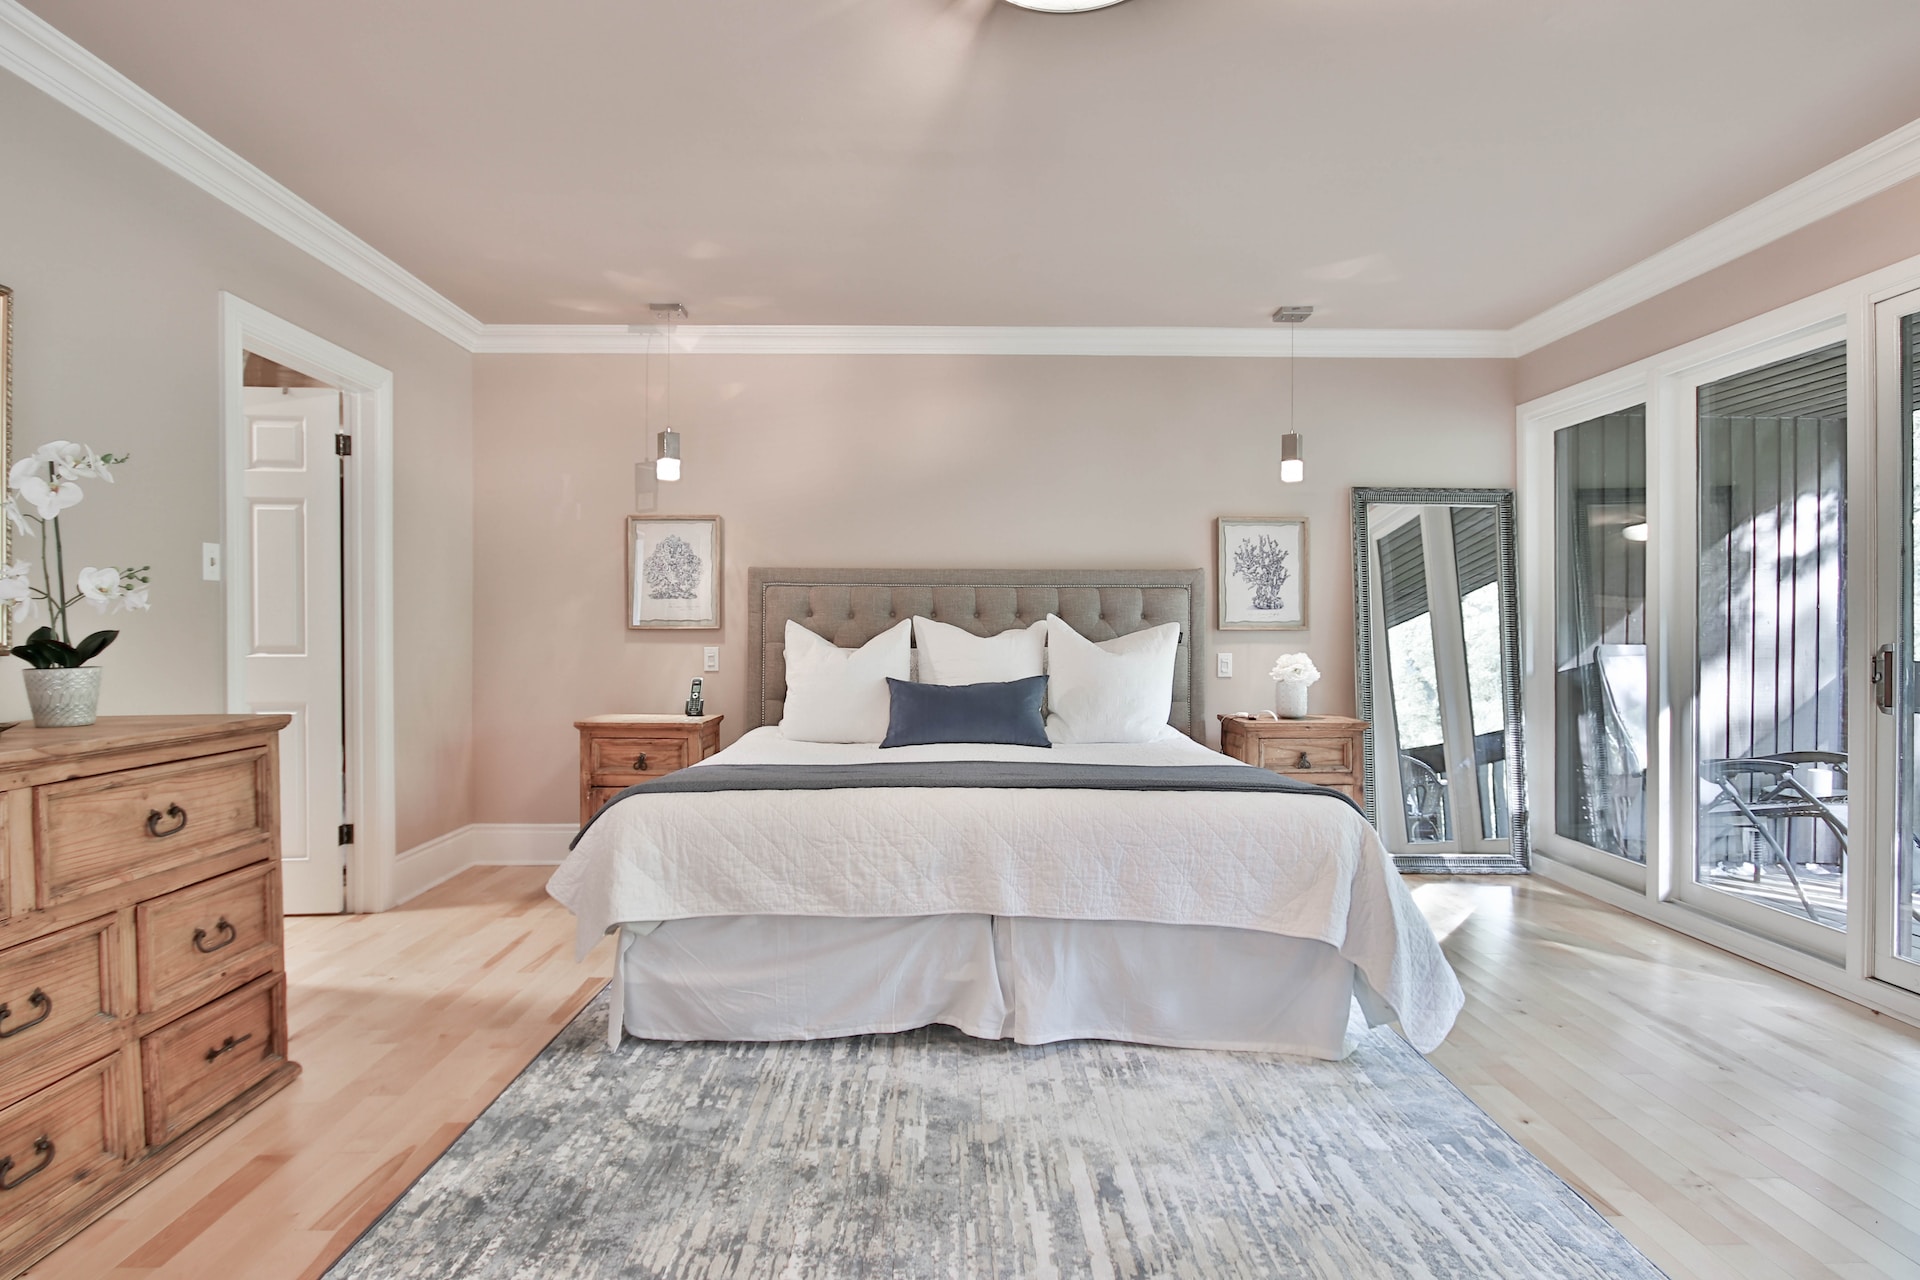 De ce să îți văruiești dormitorul într-o nuanță pastelată, în loc de alb? Avantajele acestei alegeri